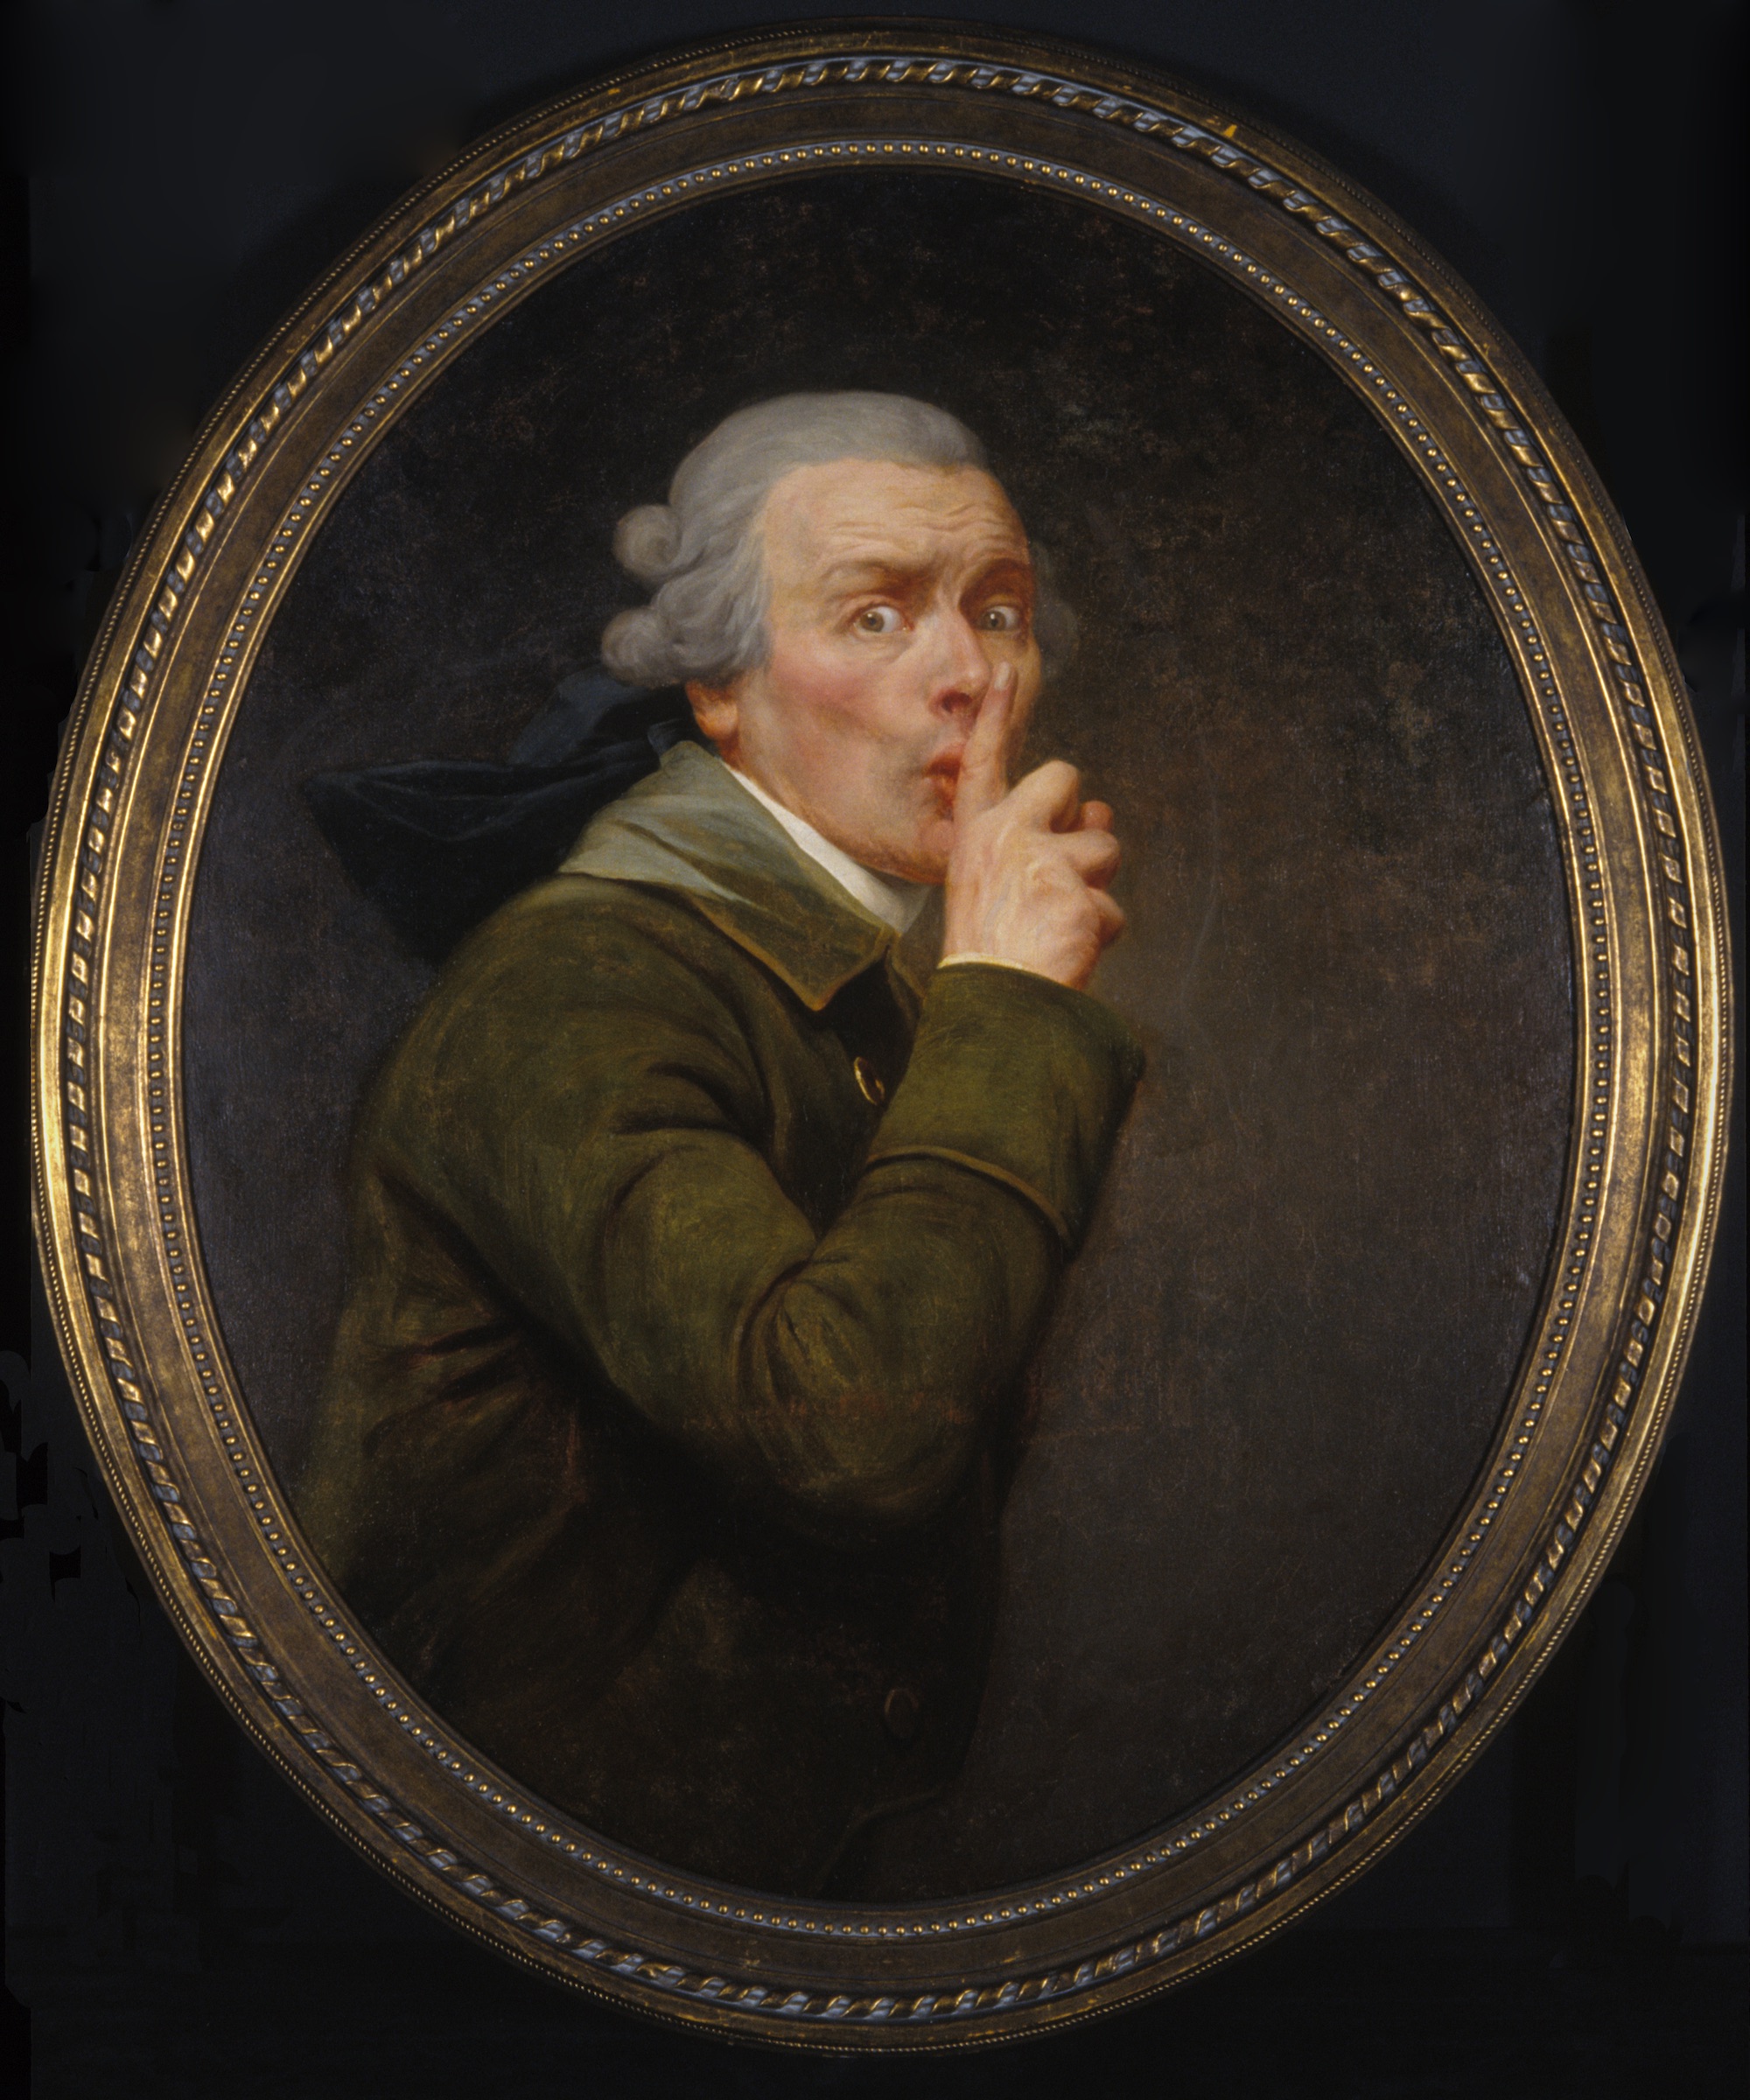 Le Discret by Joseph Ducreux - ca 1791 - 91.6 x 79.9 cm 